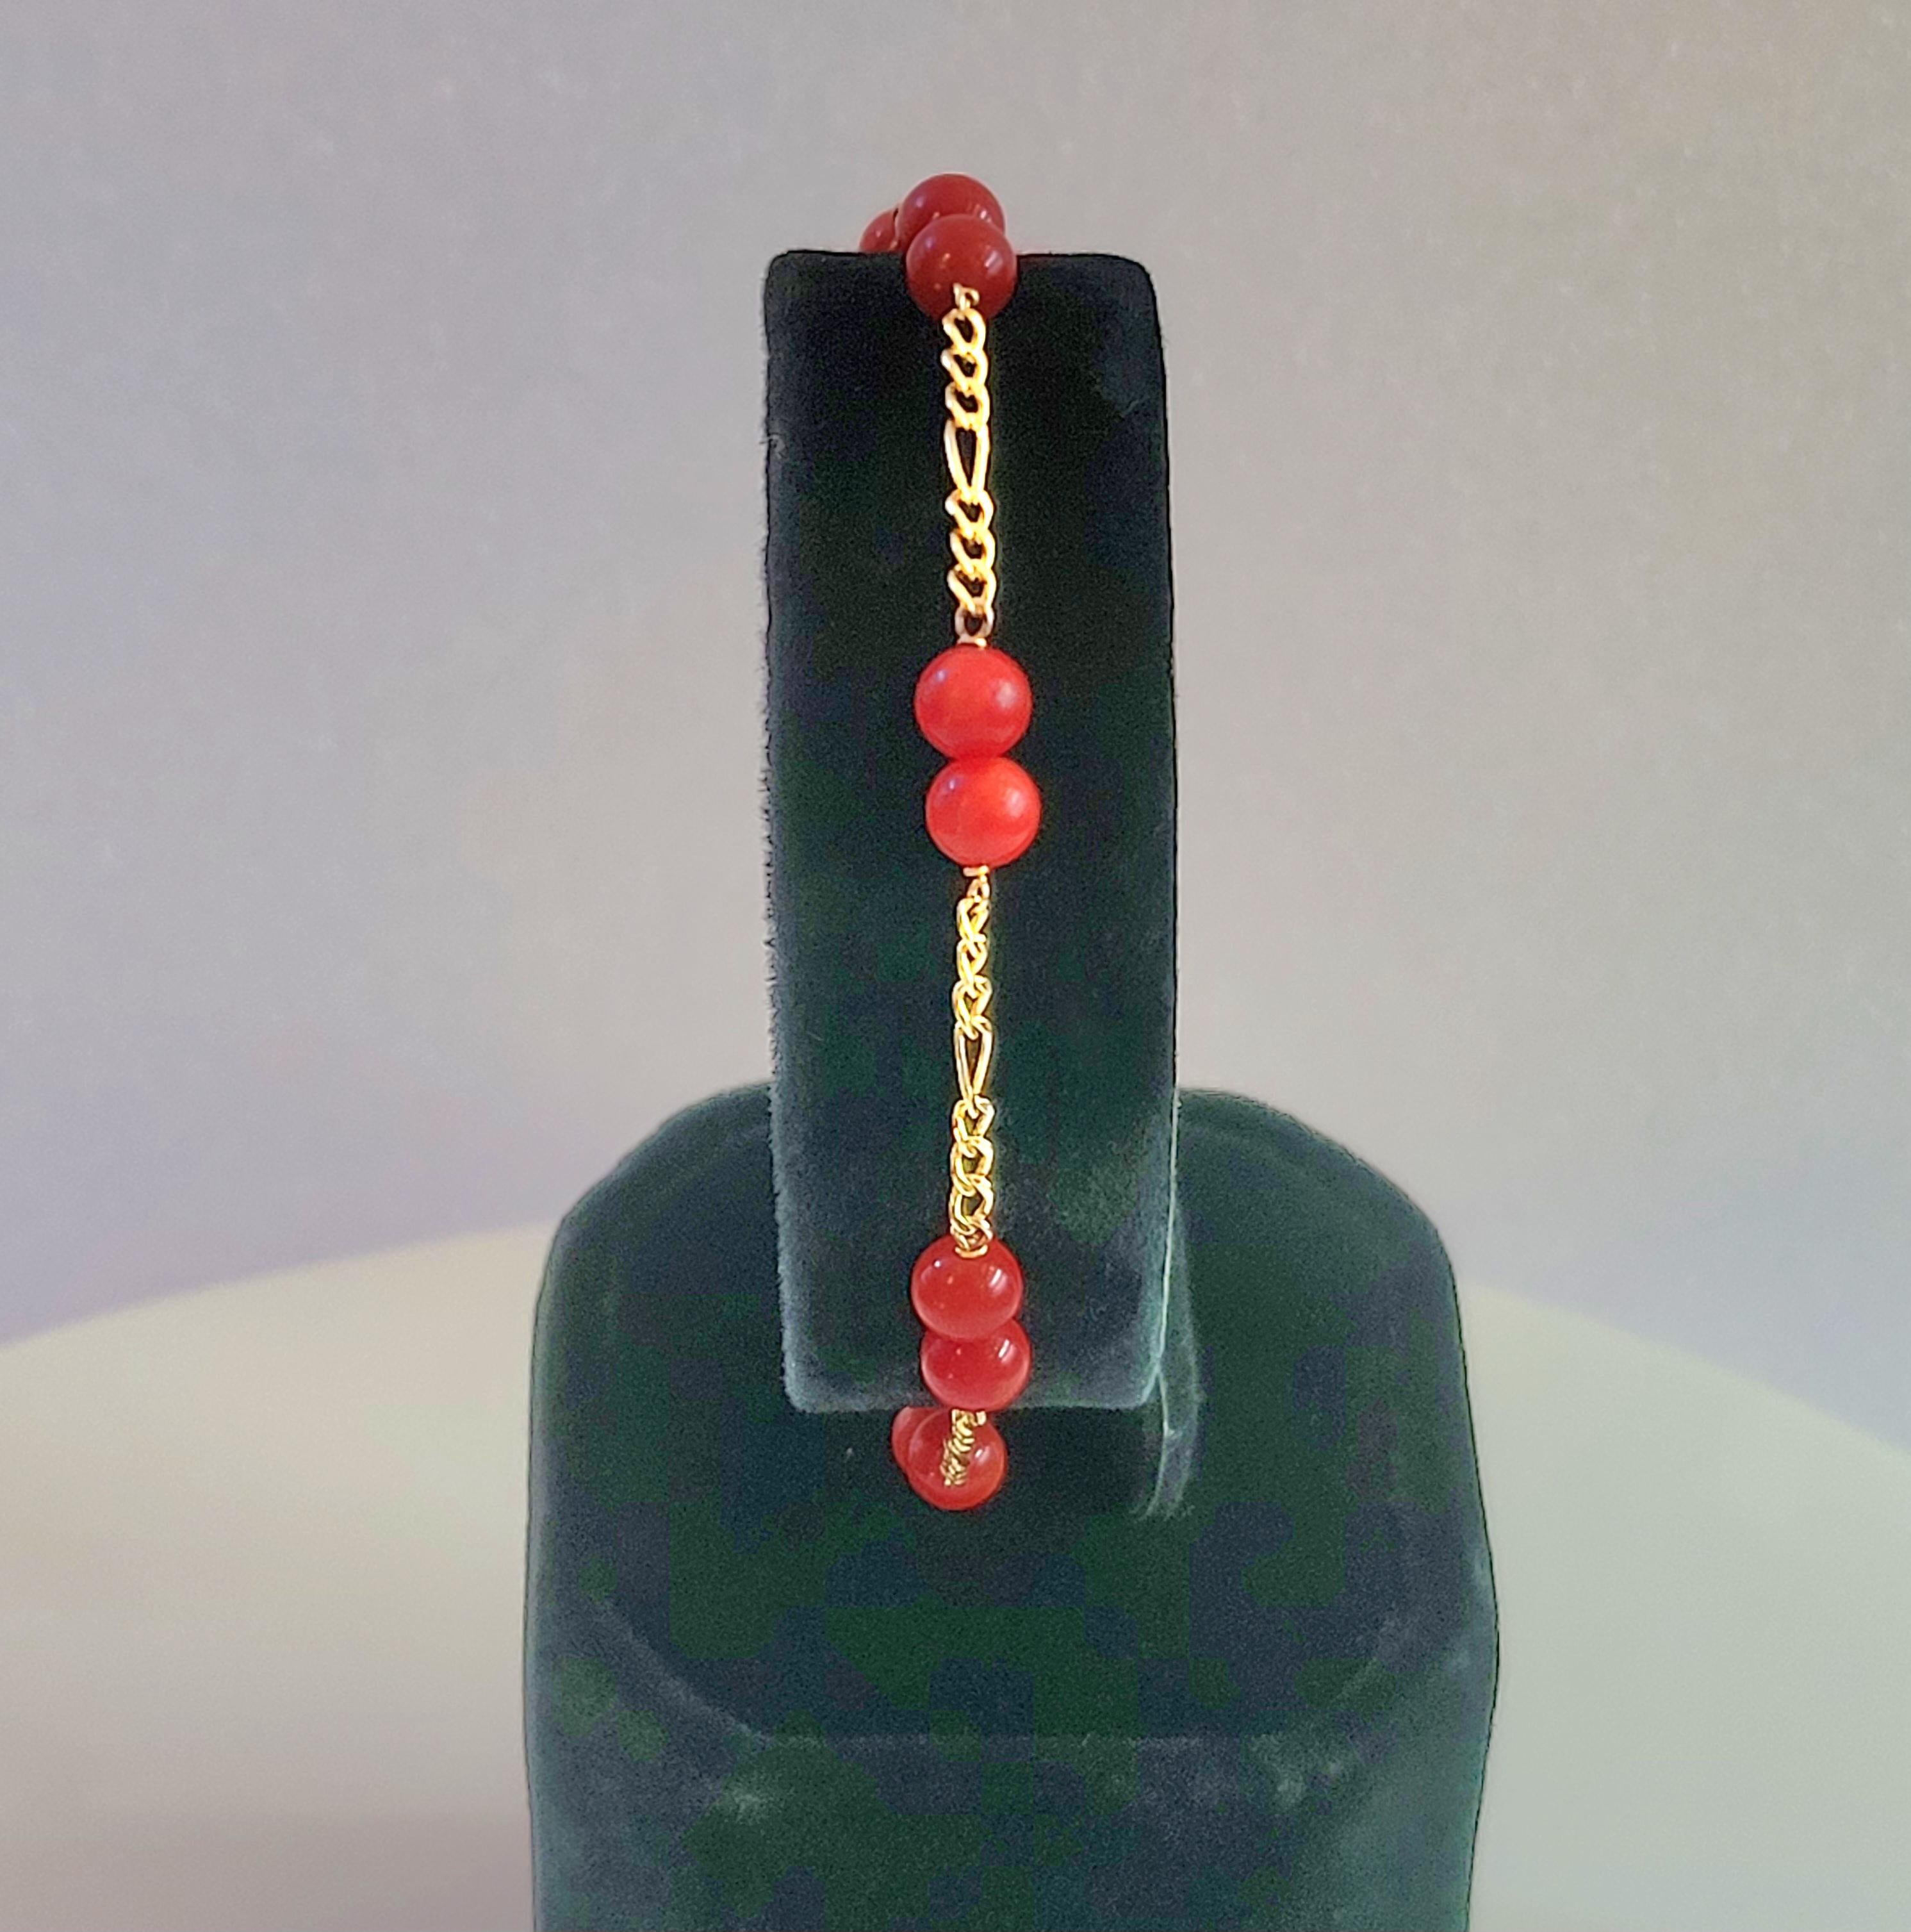 Bracelet de perles sans marque 
Matière : or jaune 14K
Perles rouges corail 4,8 mm
Longueur du bracelet 8.5''mm
Poids du bracelet 3.2gr 
Genre femmes
Condit neuf, jamais porté 
Prix de détail : 900